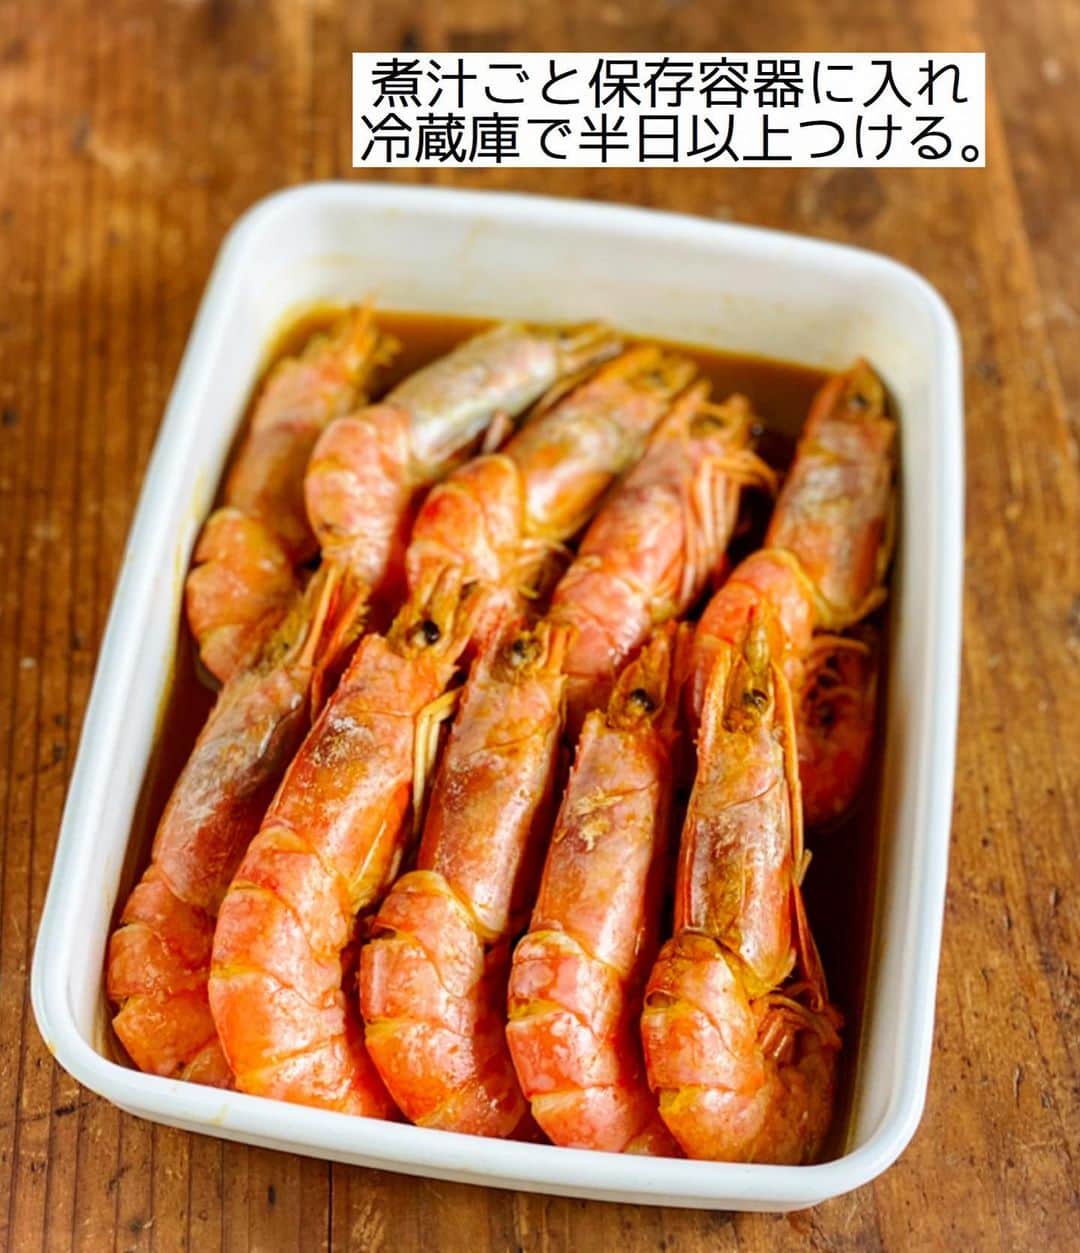 Mizuki【料理ブロガー・簡単レシピ】さんのインスタグラム写真 - (Mizuki【料理ブロガー・簡単レシピ】Instagram)「・﻿ 【#レシピ 】ーーー﻿ ♡えびのうま煮♡﻿ ーーーーーーーーー﻿ ﻿ ﻿ ﻿ おはようございます(*^^*)﻿ ﻿ 今日はおせち料理におすすめの﻿ \\ えびのうま煮 // のご紹介です♩﻿ ﻿ この時期になると﻿ よく見かける有頭えび🦐﻿ これがおせちに入っていると﻿ 華やかで豪華に見えますよ〜♡﻿ ﻿ 作り方は超簡単(*´艸`)﻿ 下処理したえびをさっと煮て﻿ 半日程度つけておくだけ！﻿ ﻿ 冷蔵庫で2〜3日持つので﻿ よかったらお試し下さいね(*^^*)﻿ ﻿ ﻿ ﻿ ＿＿＿＿＿＿＿＿＿＿＿＿＿＿＿＿＿＿＿＿﻿ 【作りやすい量】﻿ 有頭えび...8〜10尾﻿ ●水・酒...各100ml﻿ ●醤油・みりん...各大1.5﻿ ●砂糖...大1﻿ ●和風だし...小1/3﻿ ﻿ 1.えびは殻の上から爪楊枝を刺して背ワタを除く。頭の先とヒゲ、尾の先を切り揃えて綺麗に洗う。﻿ 2.鍋に●を入れて煮立て、1を入れ、時々返しながら弱めの中火で5分煮る。﻿ 3. 煮汁ごと保存容器に入れ、冷蔵庫で半日以上つける。﻿ ￣￣￣￣￣￣￣￣￣￣￣￣￣￣￣￣￣￣￣￣﻿ ﻿ ﻿ ﻿ 《ポイント》﻿ ♦︎えびの関節部分に爪楊枝を刺して背ワタを除きます♩﻿ ♦︎煮すぎるとかたくなるので注意して下さい☆﻿ ♦︎お鍋に入り切らなかったので2回に分けて(同じ煮汁で)煮ました♩﻿ ♦︎冷蔵庫で2〜3日保存できます♩﻿ ﻿ ﻿ ﻿ ﻿ ﻿ ﻿ ﻿ ﻿ 📕新刊発売中📕﻿ 【ラクしておいしい！#1品晩ごはん 】﻿ ￣￣￣￣￣￣￣￣￣￣￣￣￣￣￣￣￣﻿ 私たちだってヘトヘトな日がある•••﻿ 毎日何品も作っていられない•••﻿ もうごはんに悩みたくない😢﻿ そんな時、1品ごはんはいかがでしょう？﻿ というご提案です✨﻿ ﻿ 【1品ごはん】は﻿ 副菜いらずで全てがシンプル！﻿ ￣￣￣￣￣￣￣￣￣￣￣￣￣￣￣￣￣￣﻿ 一品つくるだけでいいから﻿ 献立を考えなくてよし！﻿ ￣￣￣￣￣￣￣￣￣￣￣￣￣￣￣￣￣￣﻿ 悩まない、疲れない、﻿ 気力や時間がなくてもなんとかなる！﻿ ￣￣￣￣￣￣￣￣￣￣￣￣￣￣￣￣￣￣﻿ そんな頼りになる﻿ 便利なお助けごはんです☺️💕﻿ (ハイライトに🔗貼っています✨)﻿ ￣￣￣￣￣￣￣￣￣￣￣￣￣￣￣￣￣﻿ ﻿ ﻿ ﻿ ﻿ ﻿ ⭐️発売中⭐️﻿ ＿＿＿＿＿＿＿＿＿＿＿＿＿＿＿＿＿＿﻿ しんどくない献立、考えました♩﻿ \15分でいただきます/﻿ 📕#Mizukiの2品献立 📕﻿ ﻿ 和食をもっとカジュアルに♩﻿ \毎日のごはんがラクになる/﻿ 📘#Mizukiの今どき和食 📘﻿ ﻿ ホケミレシピの決定版♩﻿ \はじめてでも失敗しない/﻿ 📙ホットケーキミックスのお菓子 📙﻿ ﻿ NHKまる得マガジンテキスト☆﻿ ホットケーキミックスで﻿ 📗絶品おやつ&意外なランチ📗﻿ ￣￣￣￣￣￣￣￣￣￣￣￣￣￣￣￣￣￣﻿ ﻿ ﻿ ﻿ ＿＿＿＿＿＿＿＿＿＿＿＿＿＿＿＿＿＿﻿ レシピを作って下さった際や﻿ レシピ本についてのご投稿には﻿ タグ付け( @mizuki_31cafe )して﻿ お知らせいただけると嬉しいです😊💕﻿ ￣￣￣￣￣￣￣￣￣￣￣￣￣￣￣￣￣￣﻿ ﻿ ﻿ ﻿ ﻿ #えび#うま煮#おせち料理#お正月#Mizuki#簡単レシピ#時短レシピ#節約レシピ#料理#フーディーテーブル#マカロニメイト#おうちごはん#デリスタグラマー#料理好きな人と繋がりたい#料理記録#おうちごはんlover#写真好きな人と繋がりたい#foodpic#cooking#recipe#lin_stagrammer#foodporn#yummy#f52grams#えびのうま煮m」12月30日 7時13分 - mizuki_31cafe